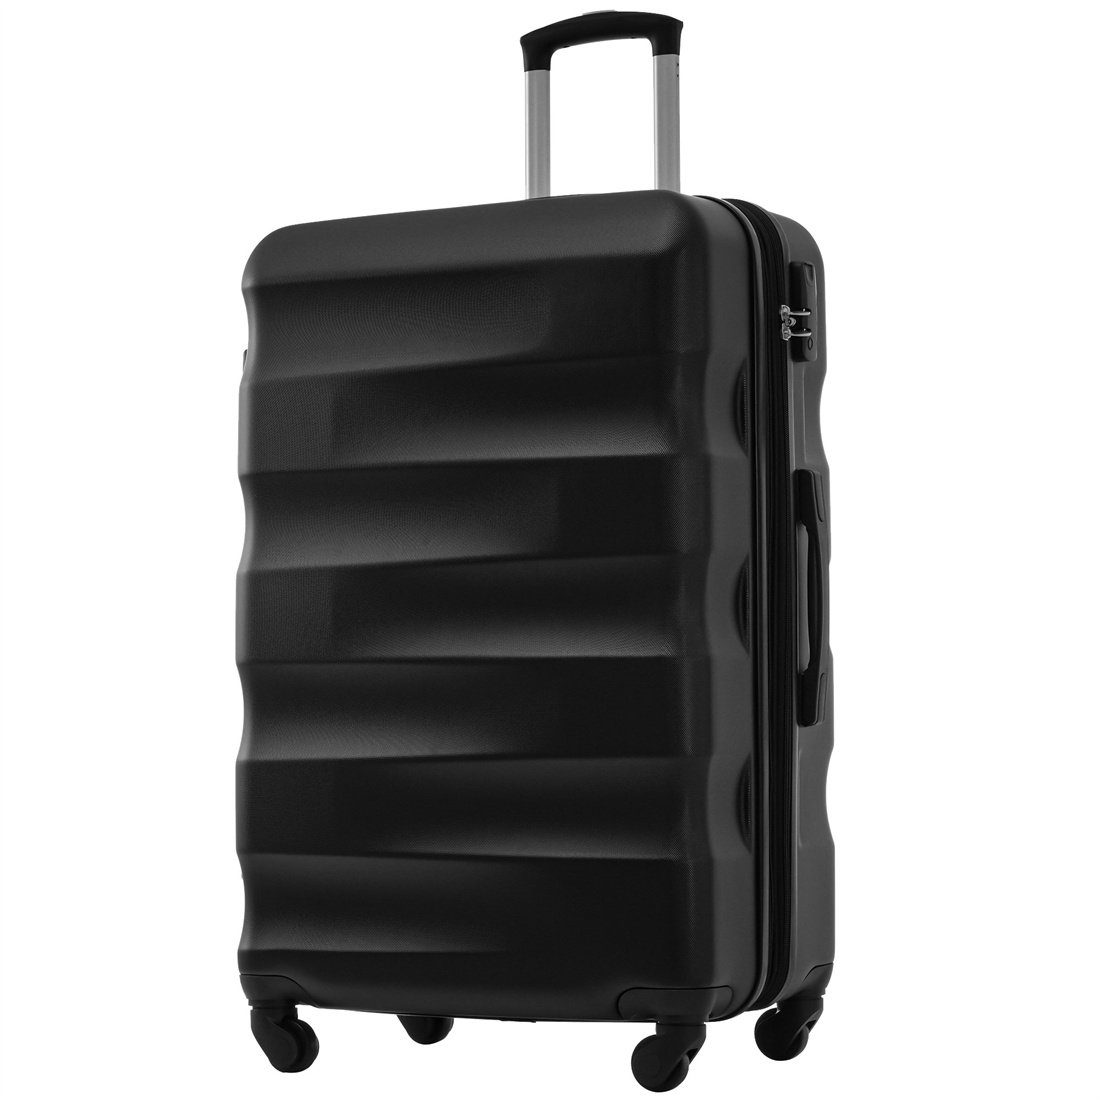 DÖRÖY Koffer Hartschalen-Koffer, Reisekoffer, ABS-Material 69*44.5*26.5cm, schwarz